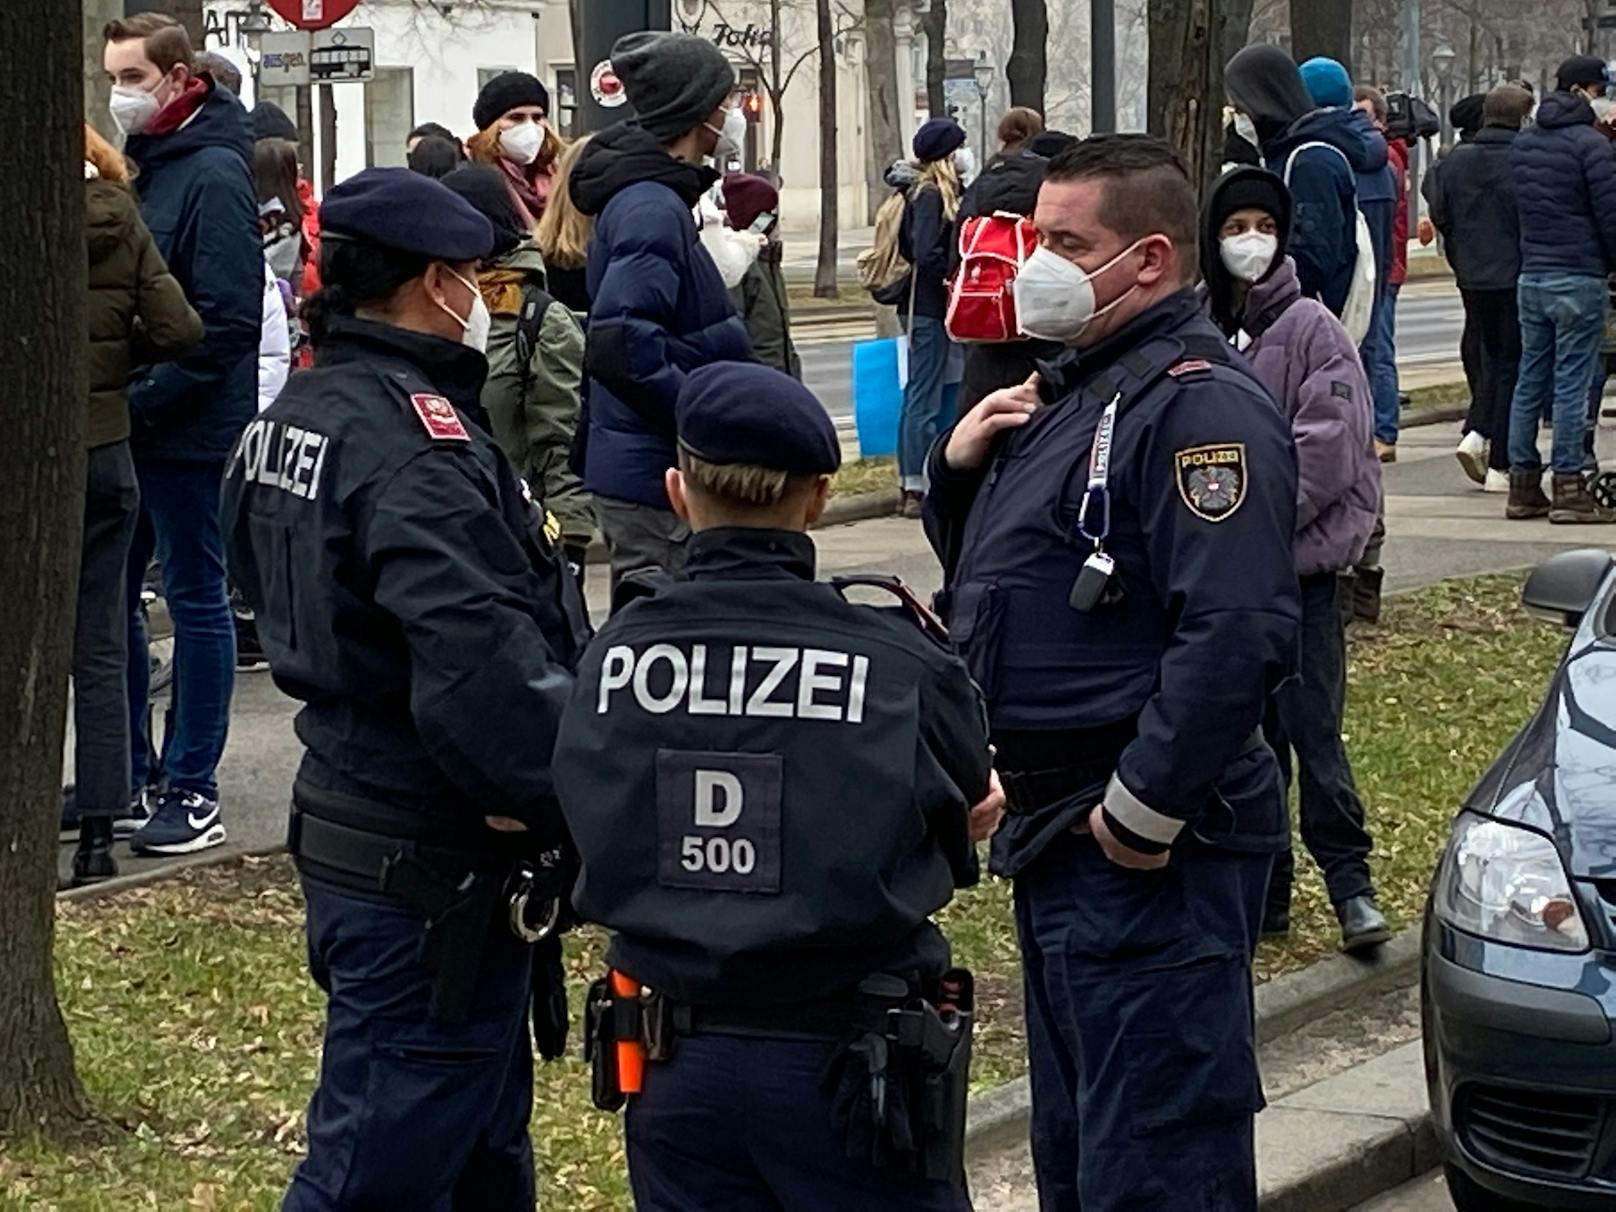 Großes Polizei-Aufgebot in der Wiener City